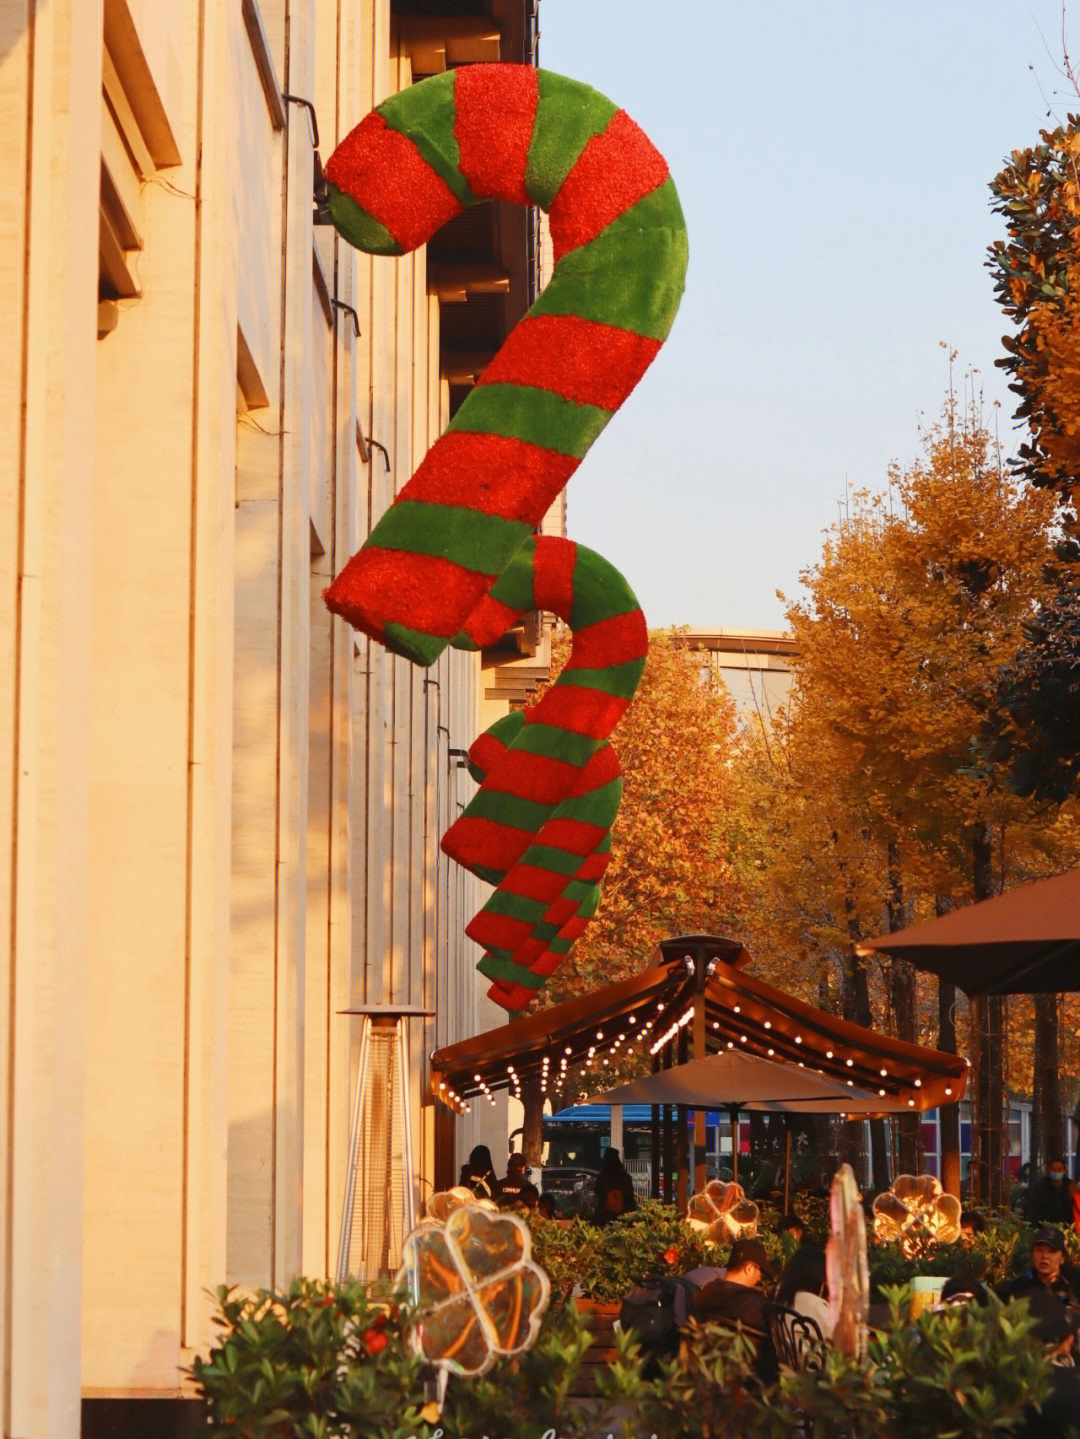 杭州湖滨银泰e区(可93海伦司,就可找到)墙上挂满了圣诞拐杖,红绿